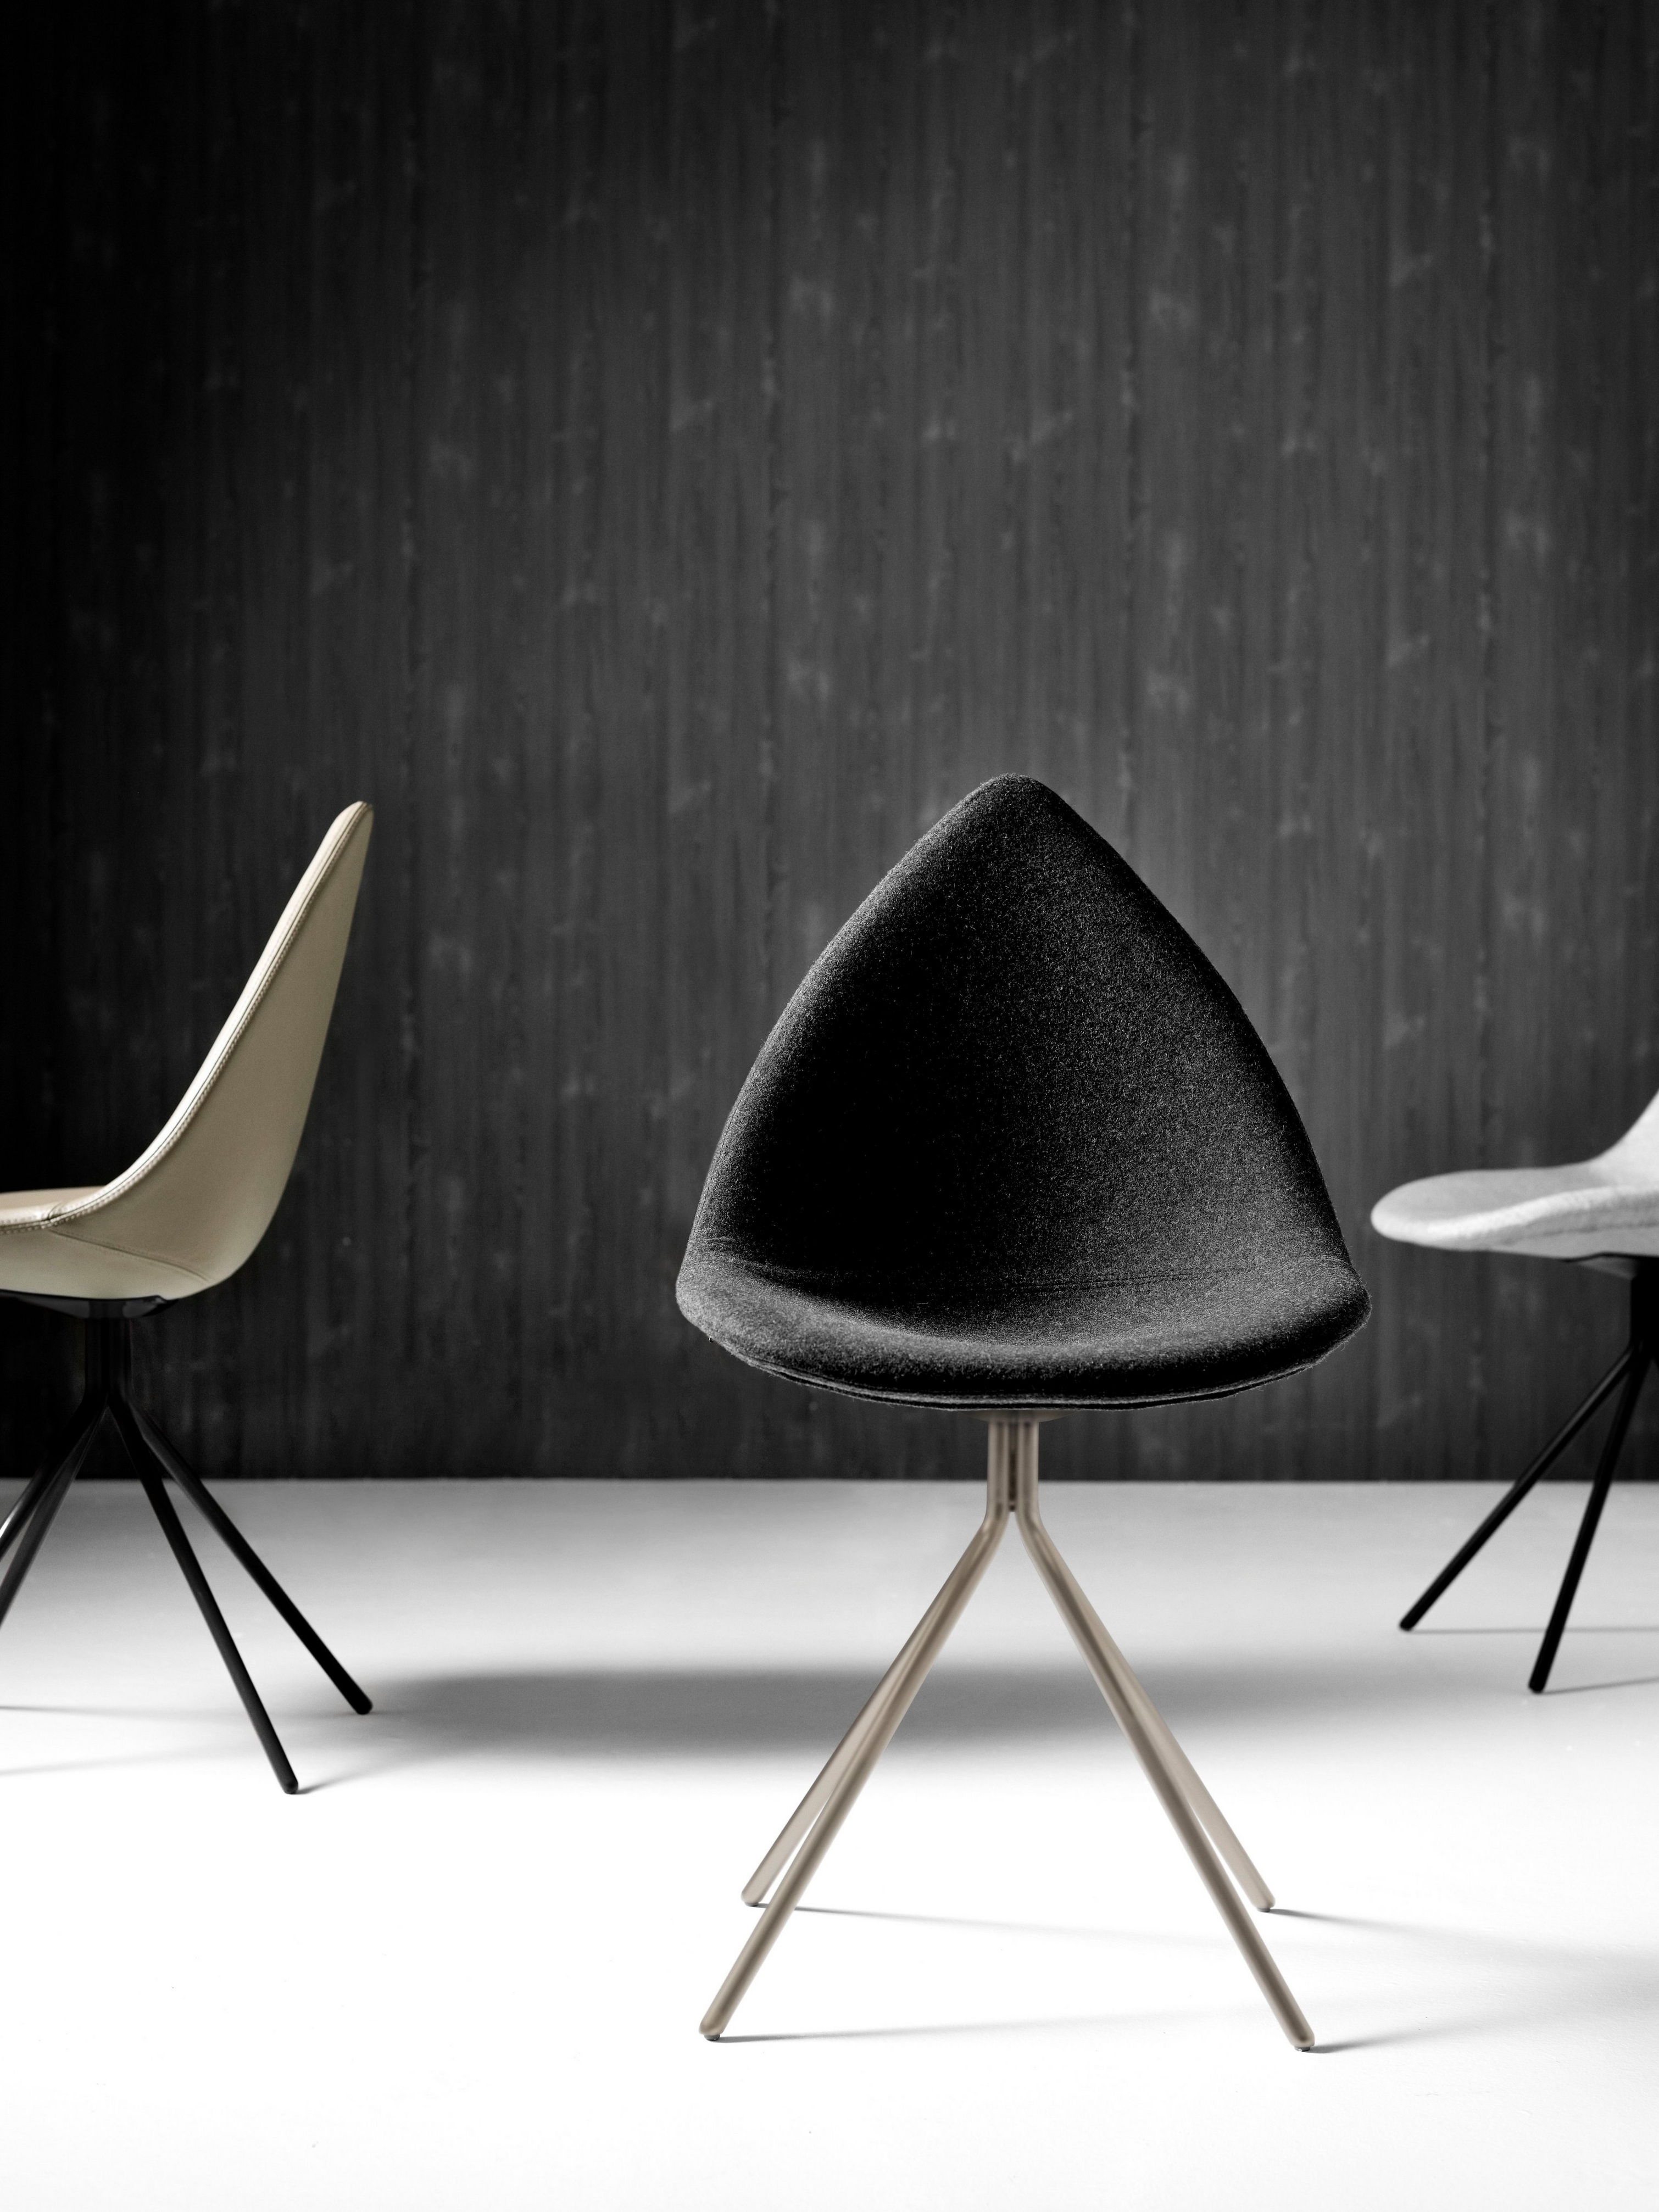 Nowoczesne krzesła Ottawa w monochromatycznym otoczeniu na teksturowanym czarnym tle.